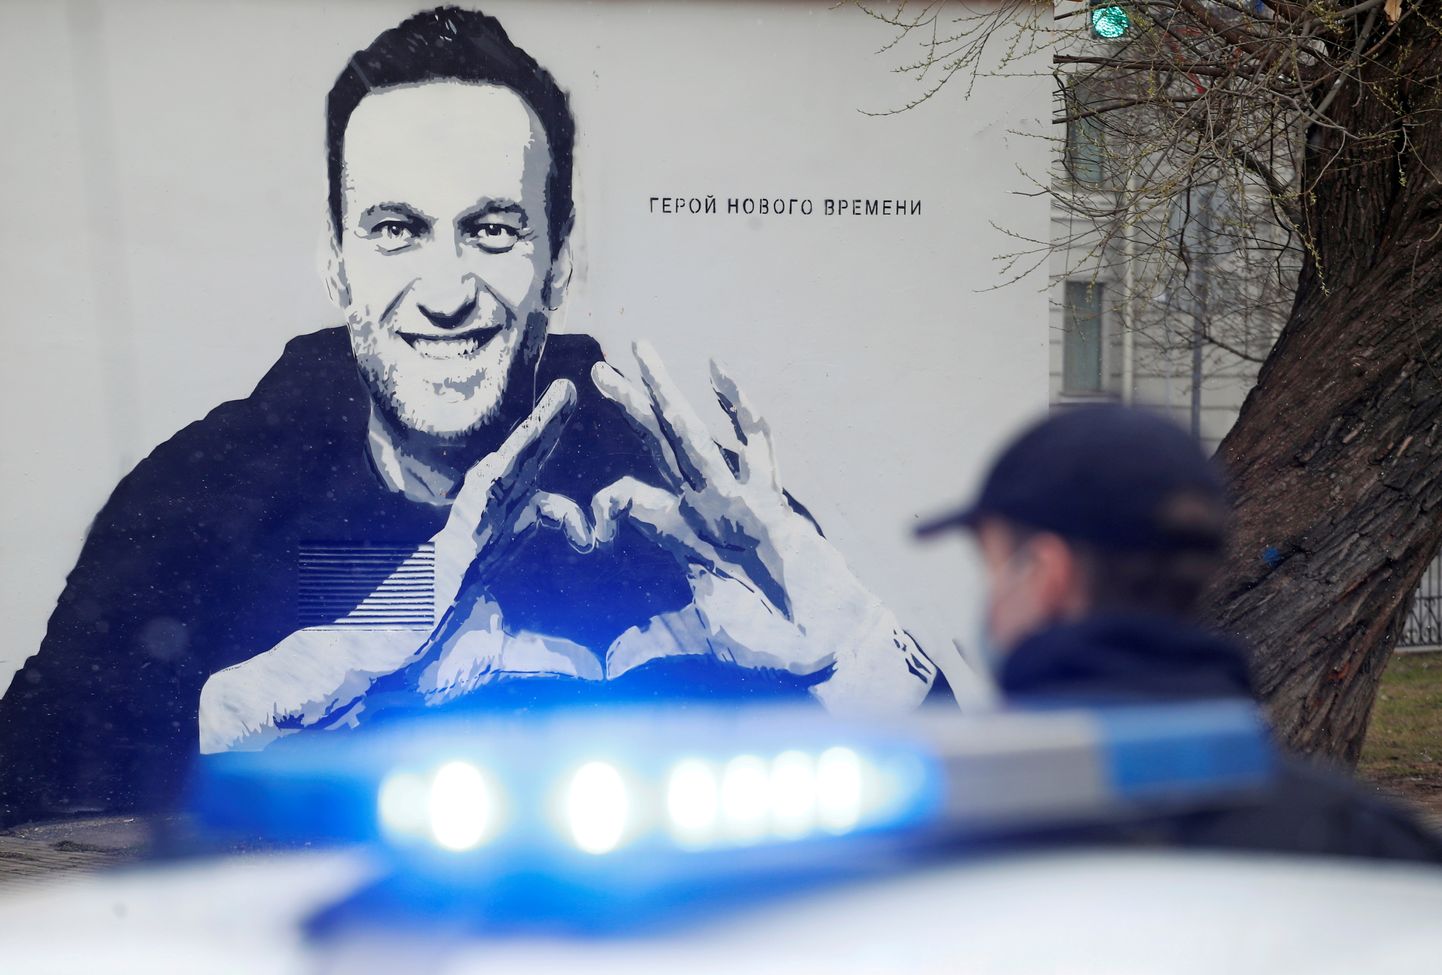 Посвященное Алексею Навальному граффити в Санкт-Петербурге. Апрель 2021 года.